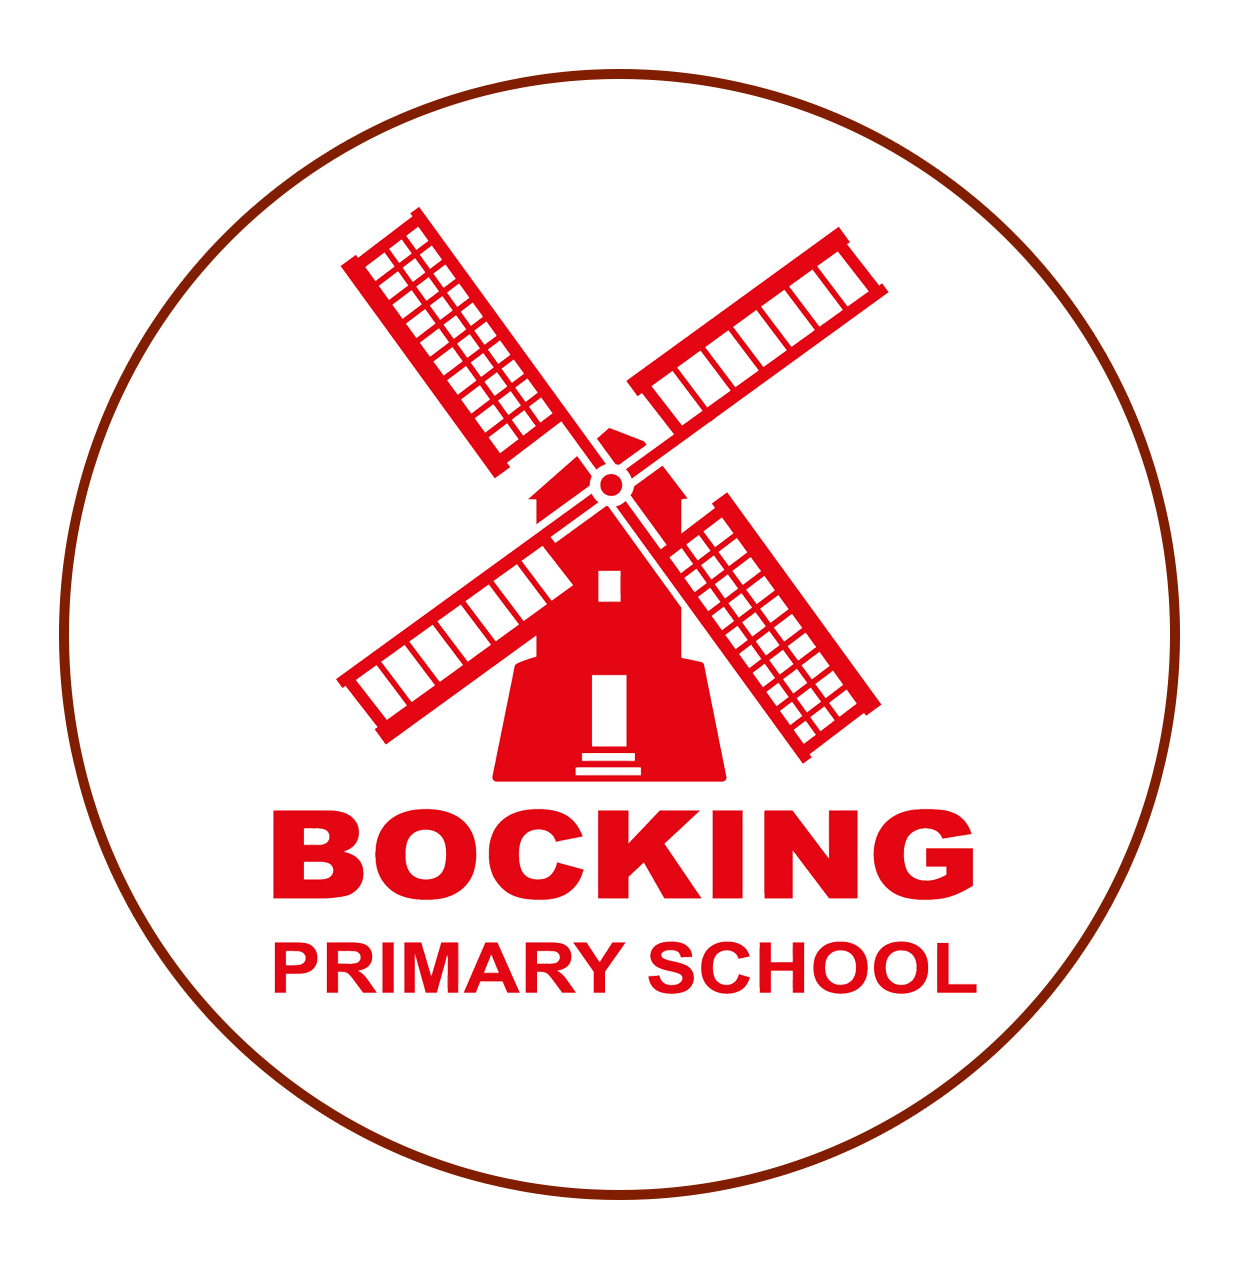 Bocking Primary School